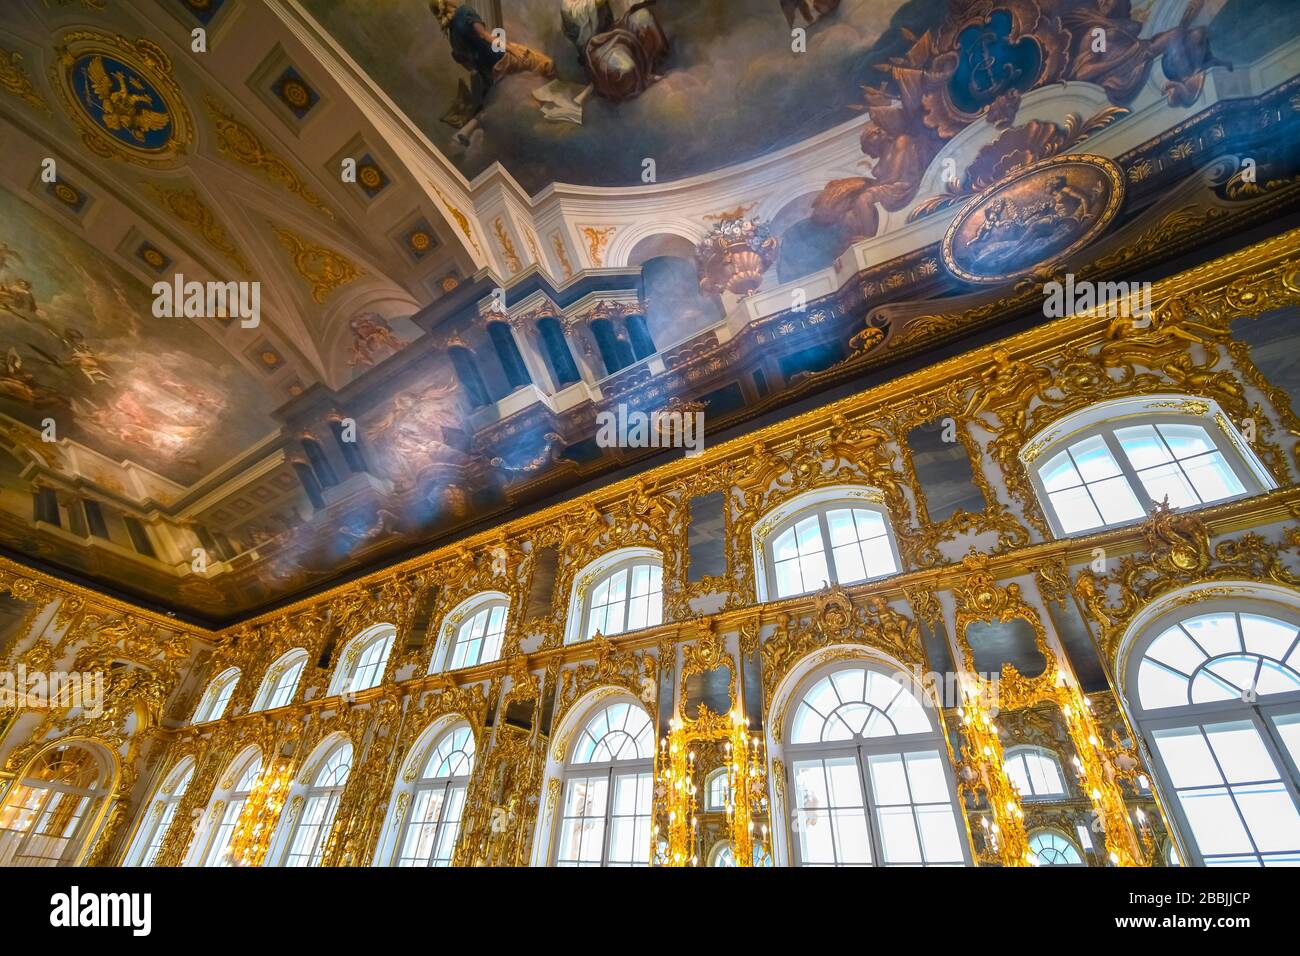 Une salle de bal intérieure dorée décorée avec un plafond coloré peint à l'intérieur de la salle de bal Rococo Catherine Palace à Pouchkine, près de Saint-Pétersbourg, en Russie. Banque D'Images